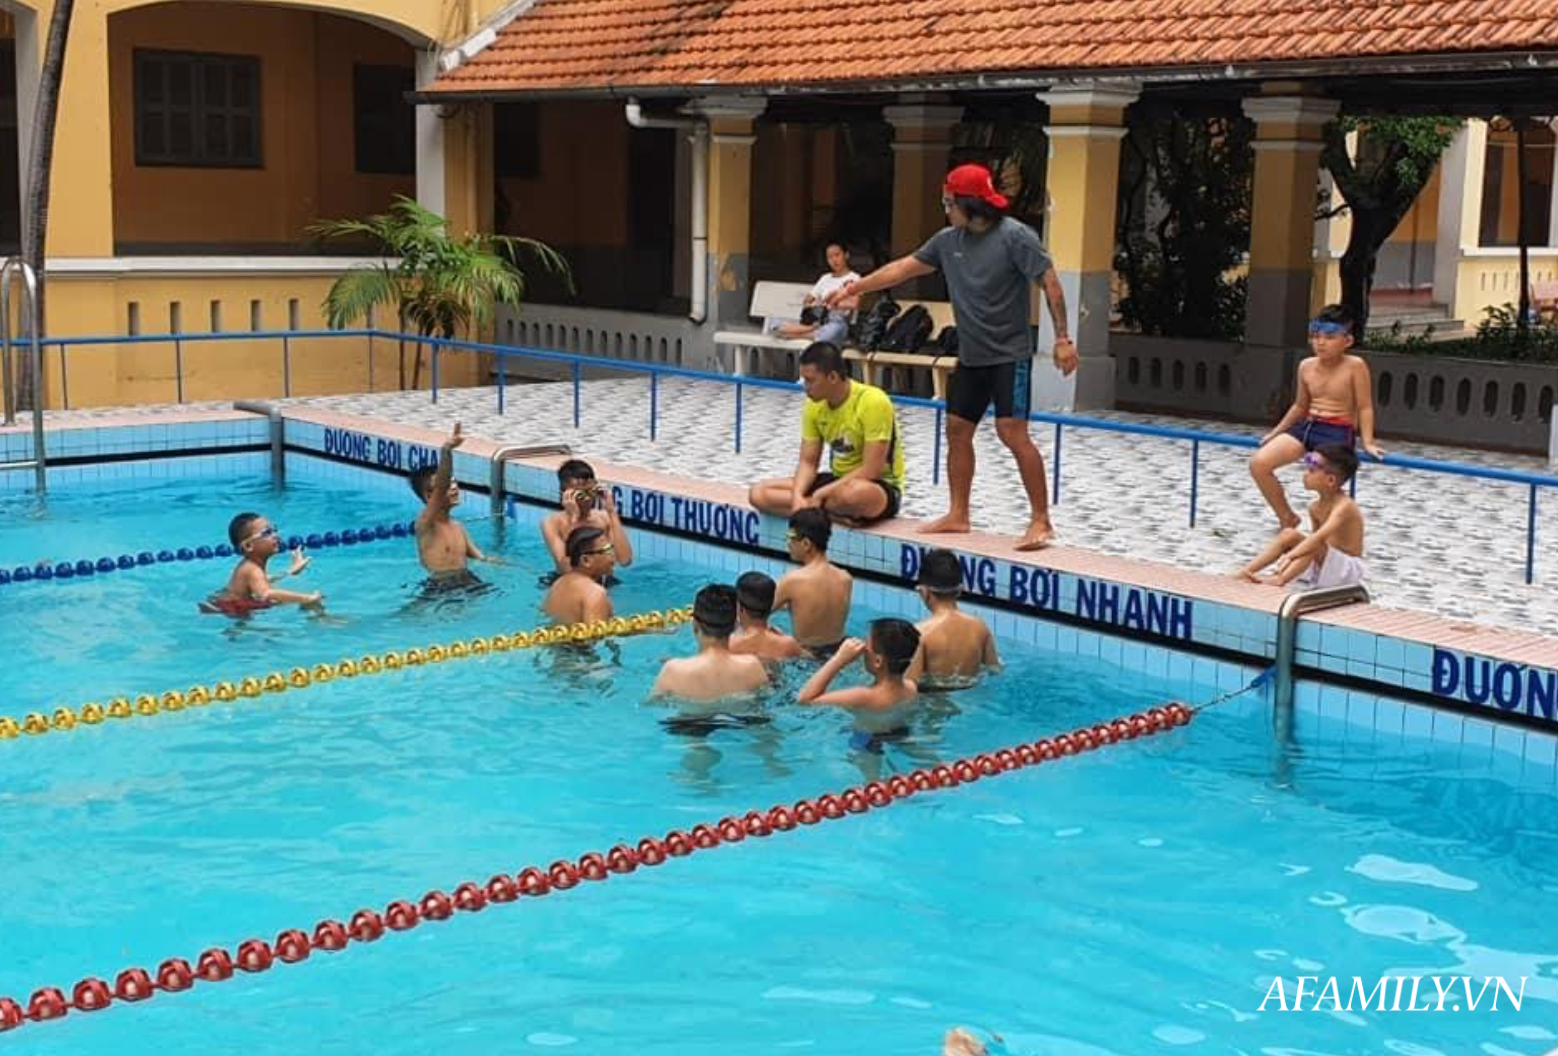 Có một lớp dạy bơi miễn phí cho trẻ em cơ nhỡ giữa lòng Sài Gòn, nơi đầy ắp tiếng cười và tình thương - Ảnh 3.